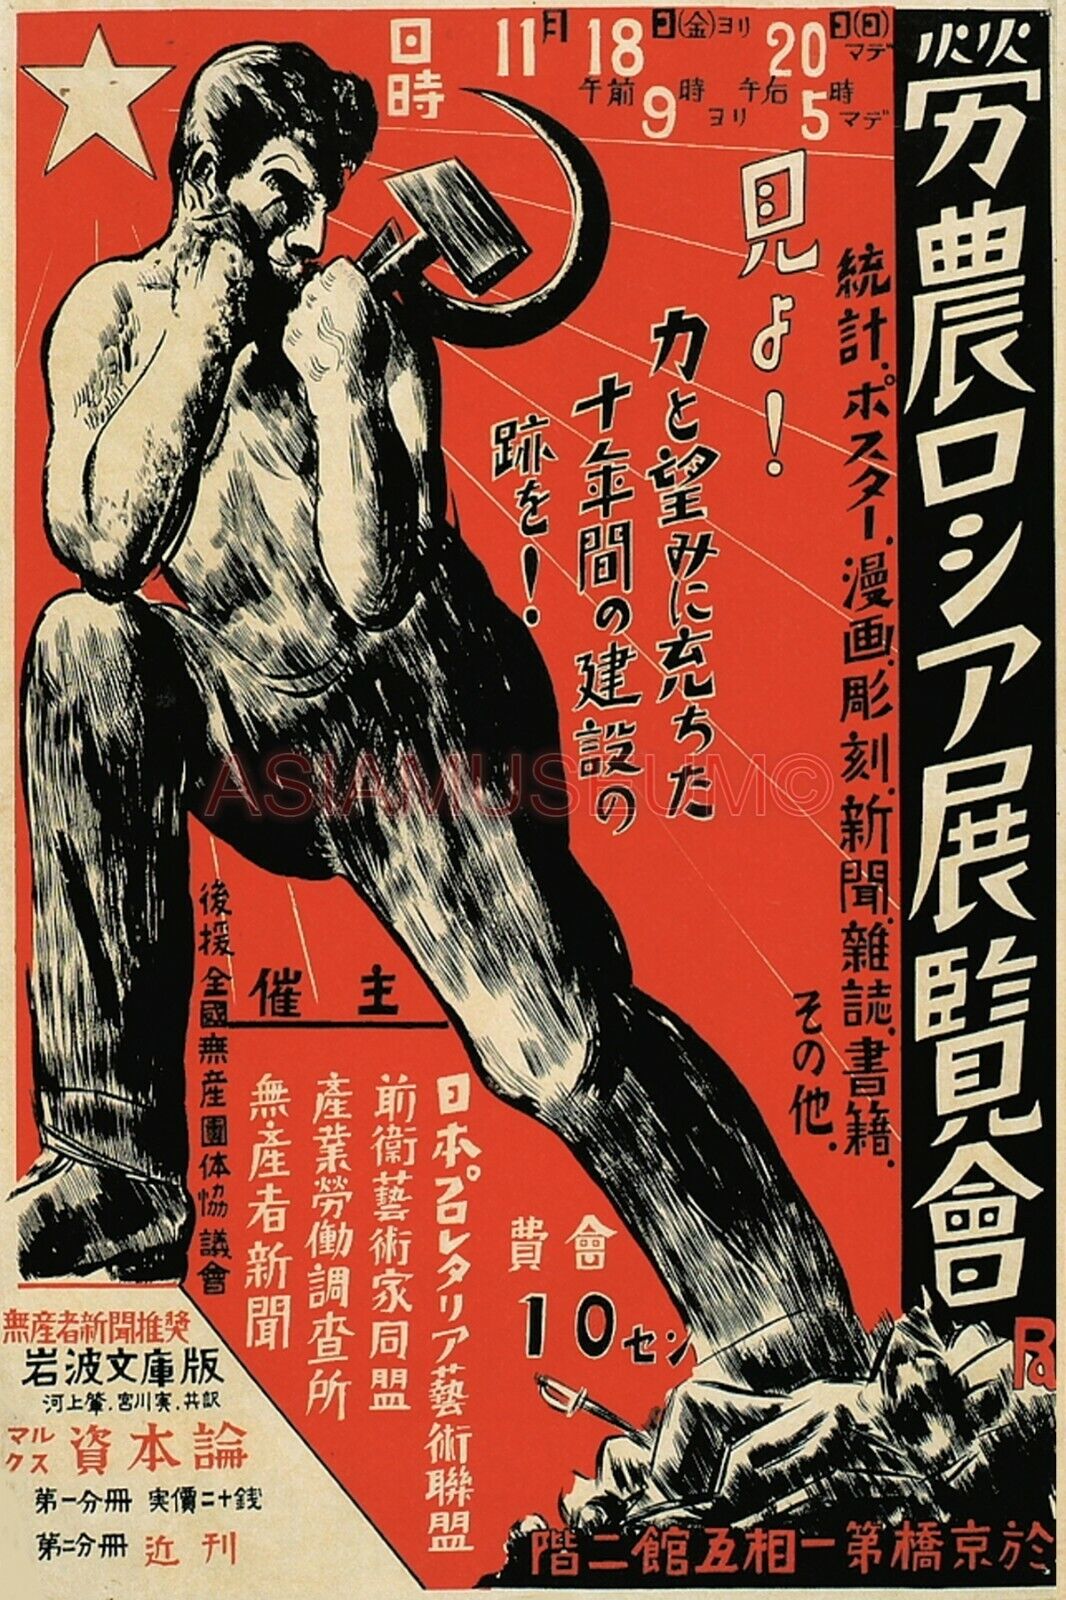 1939 WW2 JAPAN CHINA ASIA COMMUNIST USSR SOVIET WAR TAIWAN TANK ARMY ii Postcard